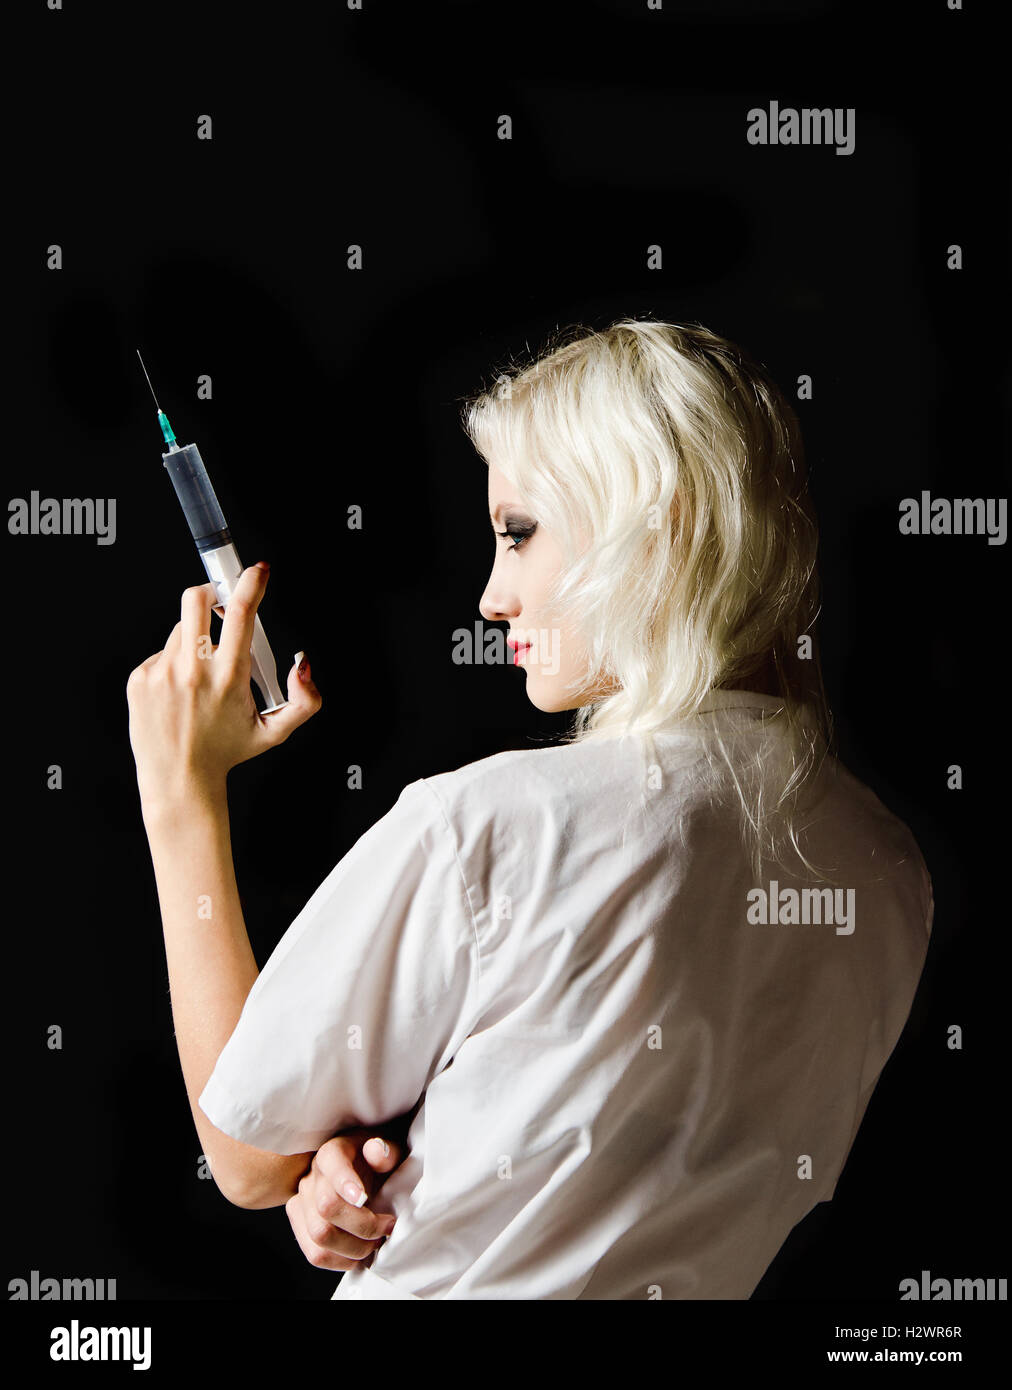 Belle jeune fille à l'image de l'infirmière avec la seringue à la main, vue arrière Banque D'Images